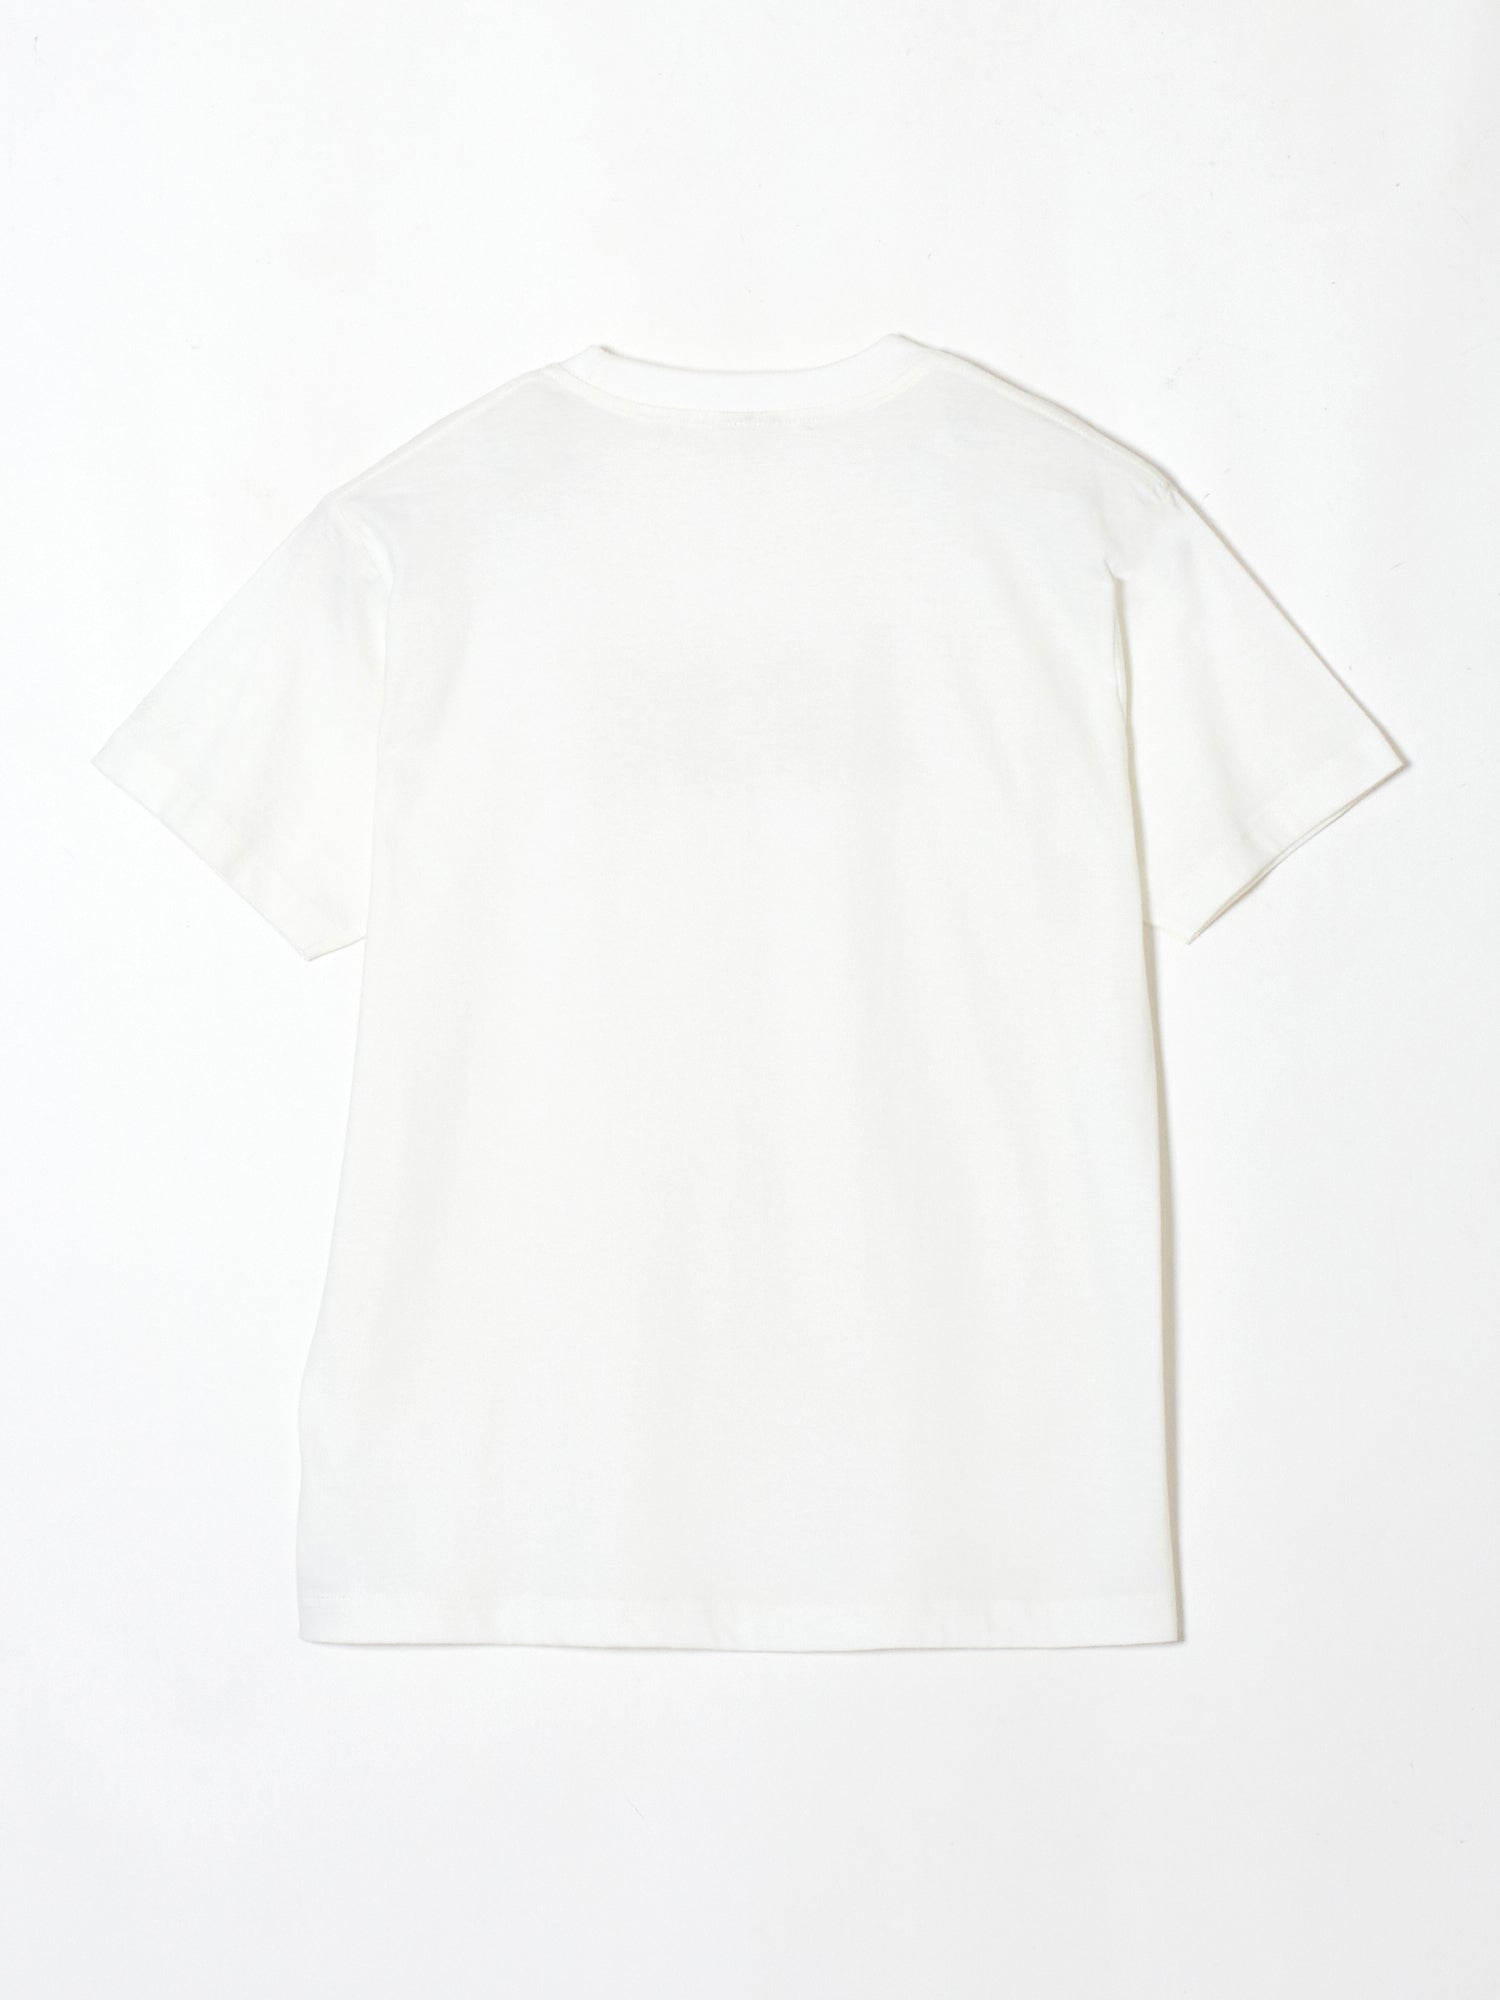 LOVE T-shirt White【stock】 – tanakadaisuke